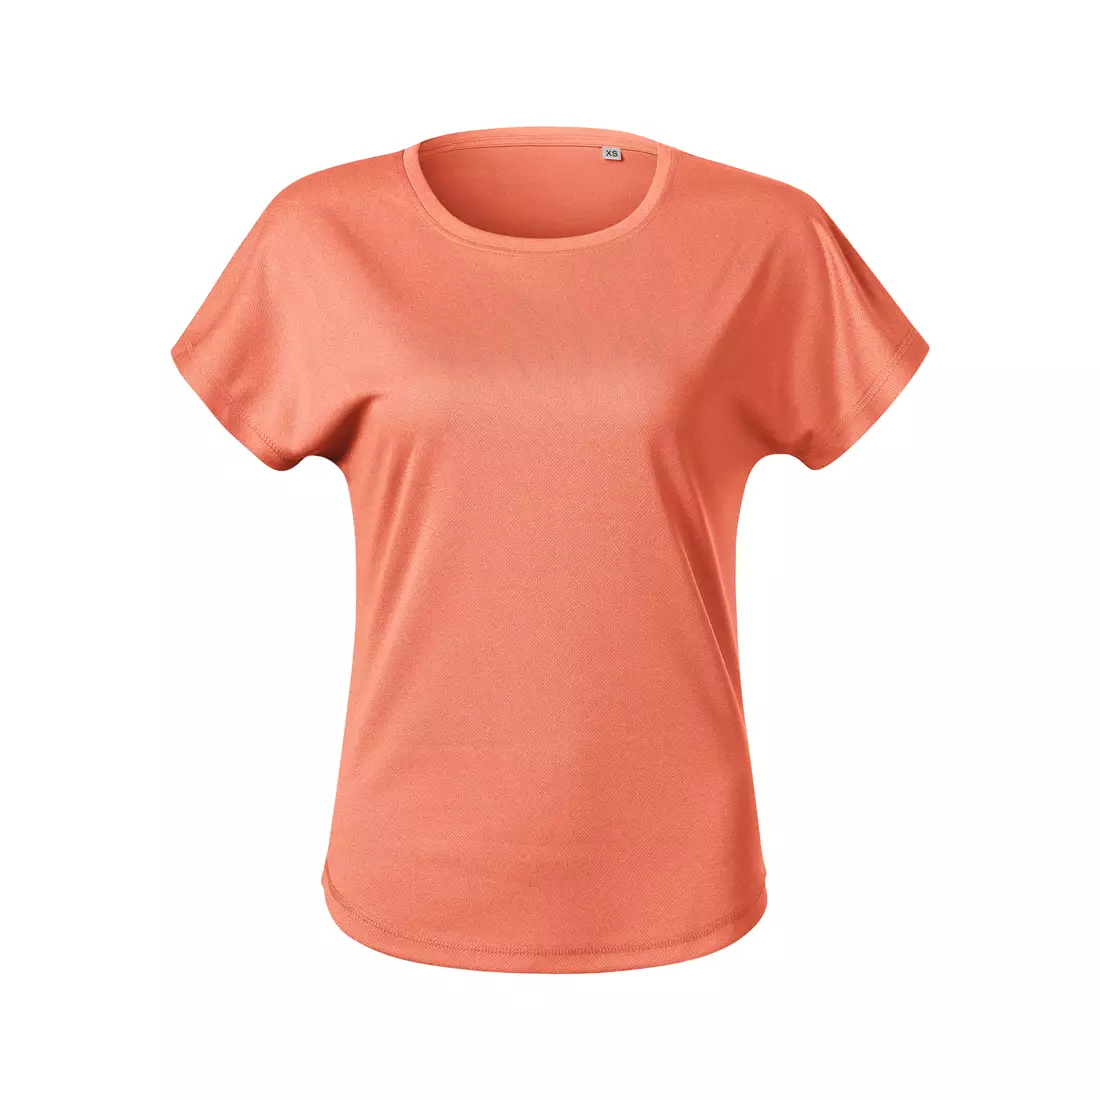 MALFINI CHANCE GRS Dámské sportovní tričko, krátký rukáv, mikro polyester z recyklovaných materiálů, sunset melírovaná 811M912